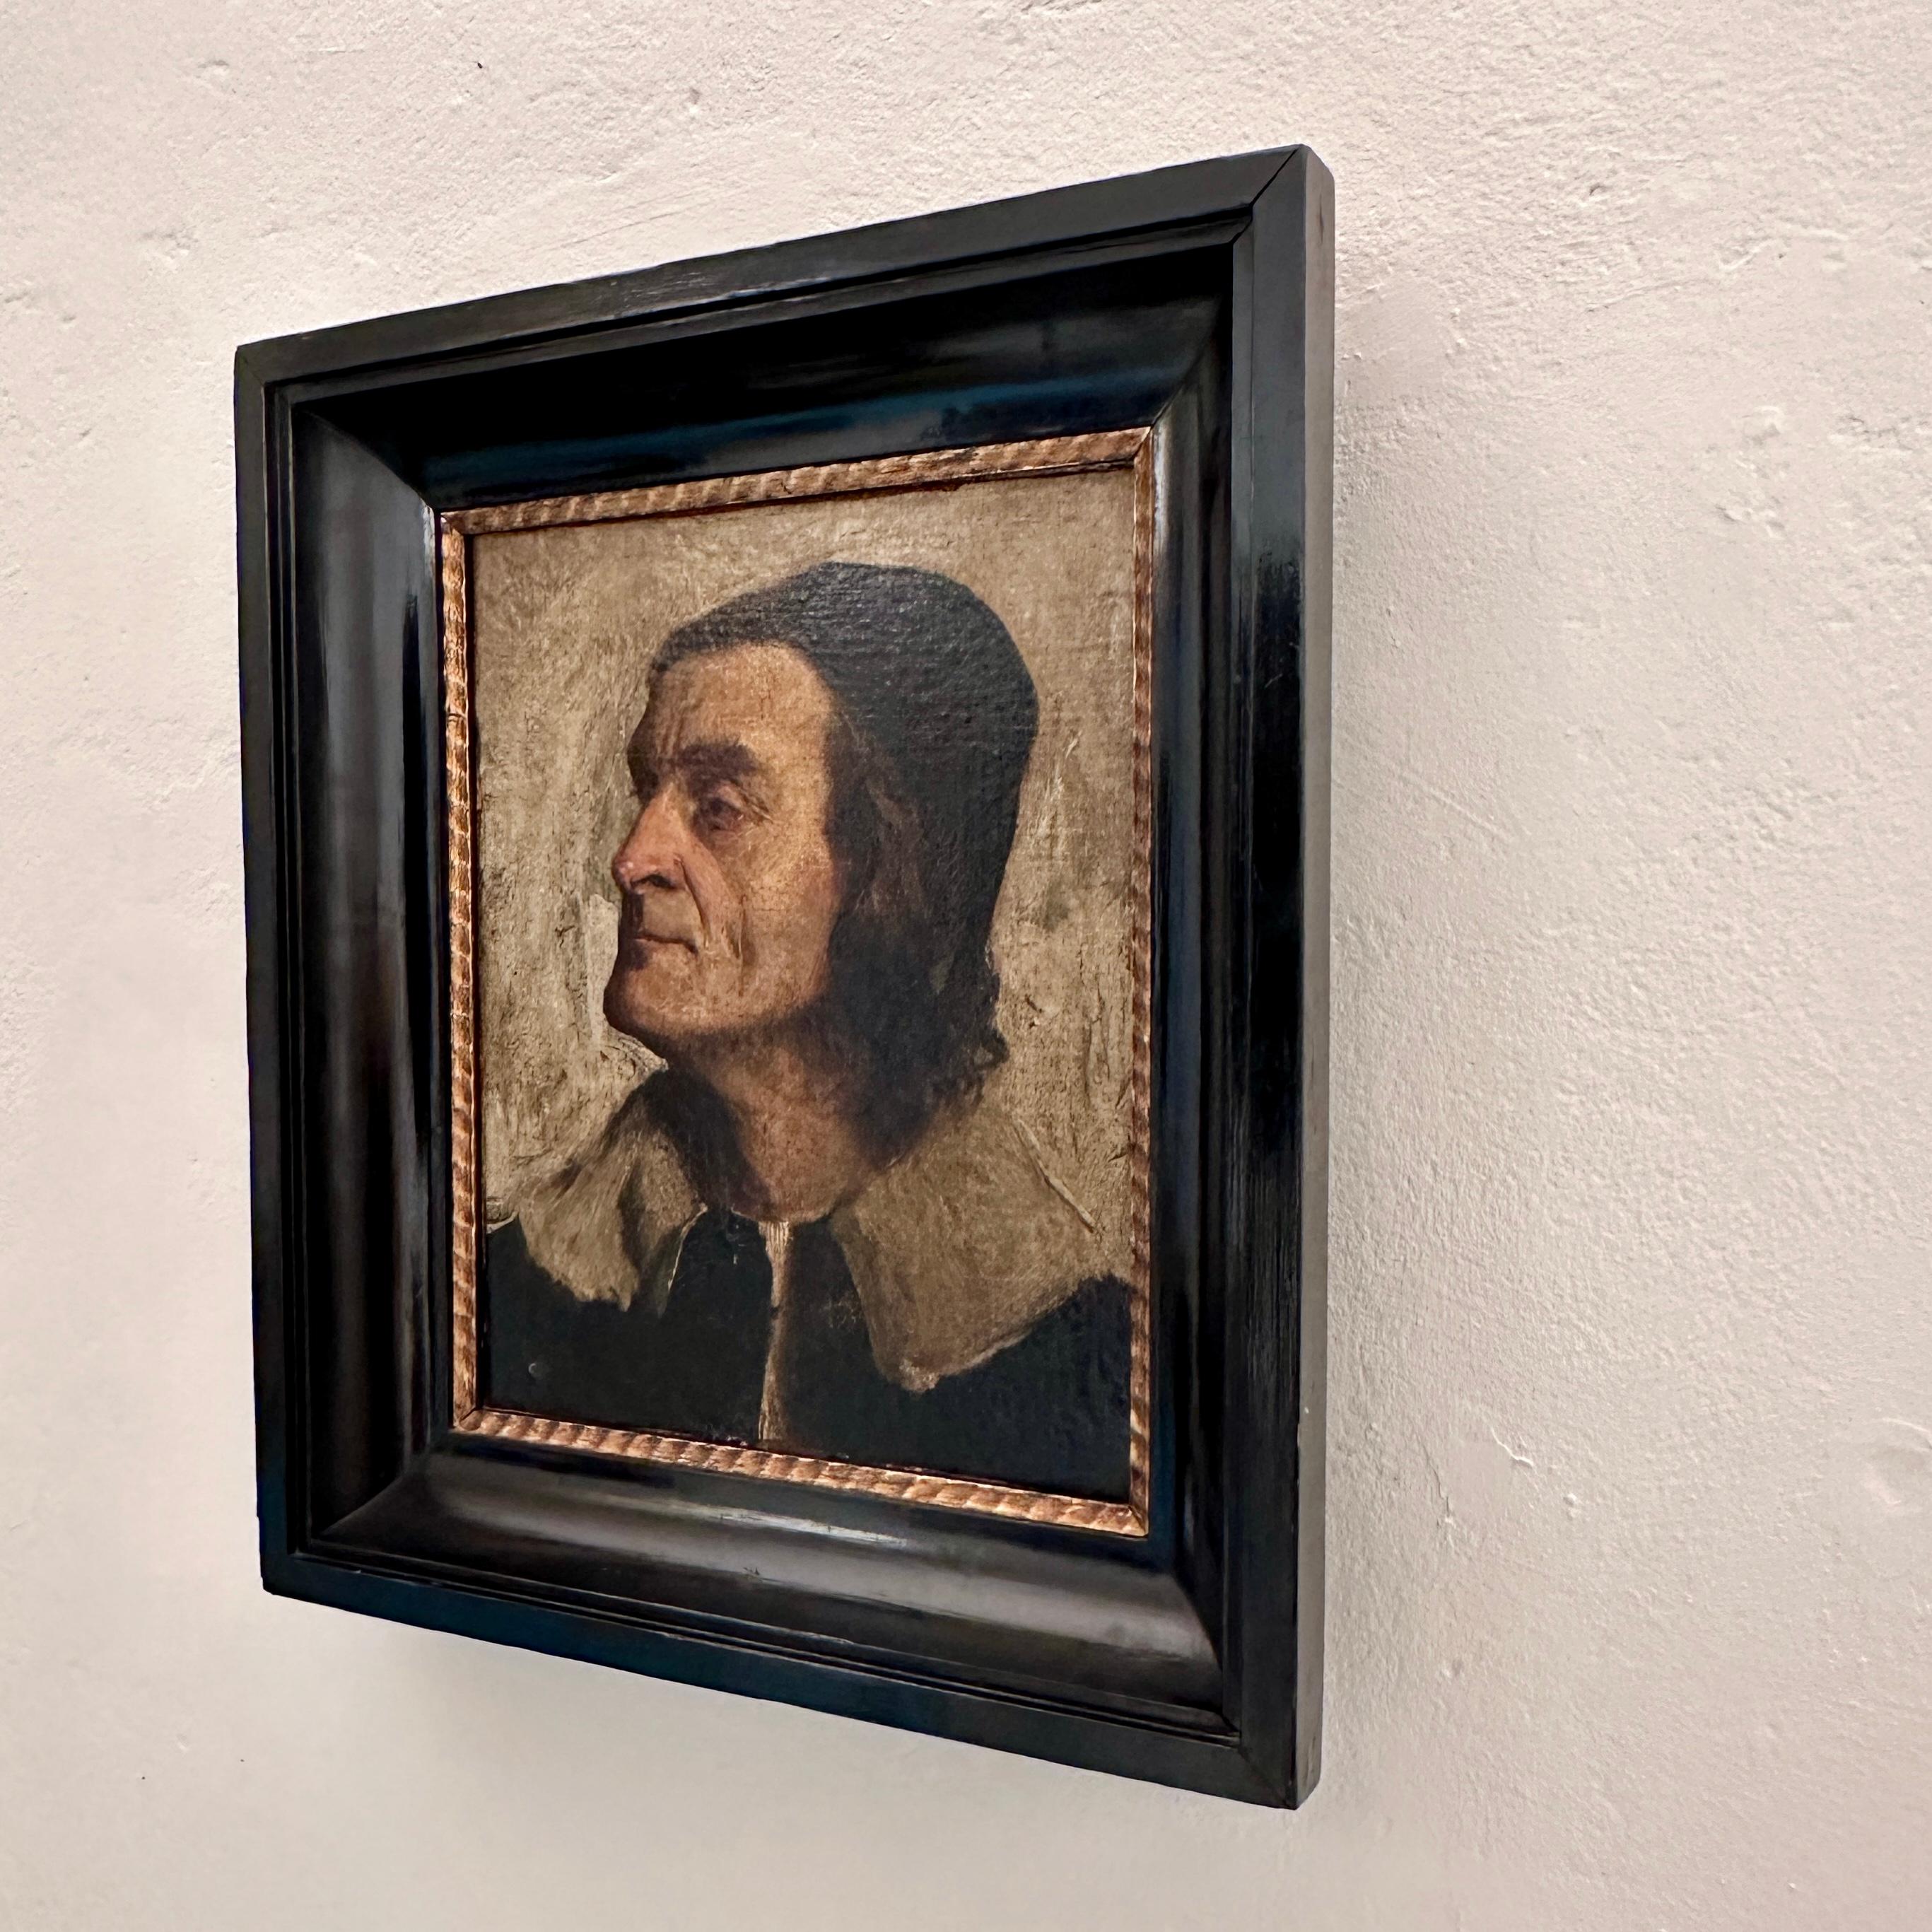 Dieses schöne Porträt-Ölgemälde des 19. Jahrhunderts von Giuliano de Medici in einem großen schwarzen Rahmen wurde 1885 gemalt.
Die Leinwand wurde irgendwann zugeschnitten und auf eine Hartfaserplatte geklebt.
Ein einzigartiges Stück, das ein toller